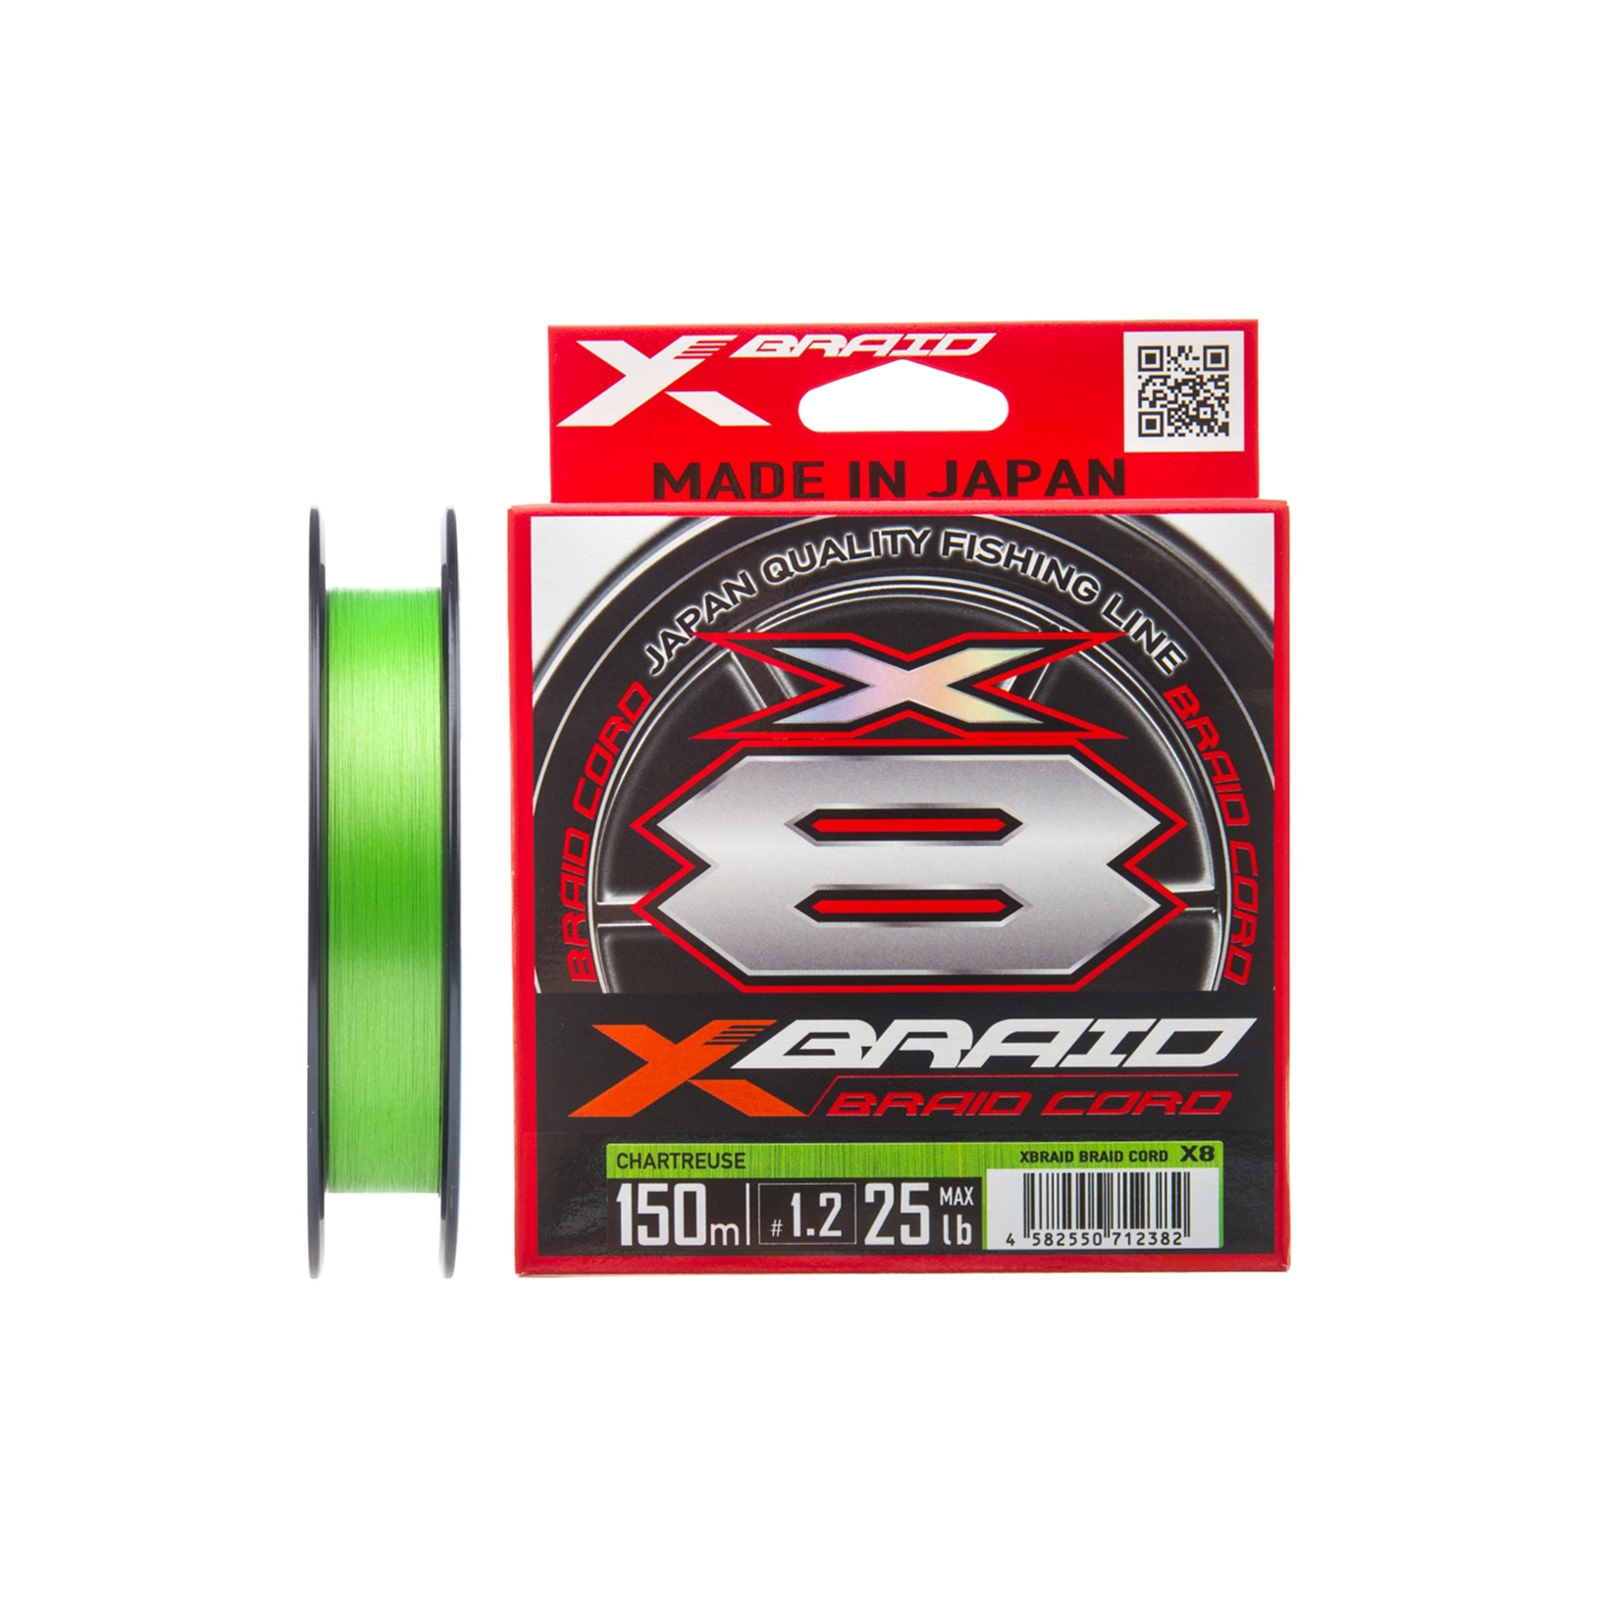 Шнур YGK X-Braid Braid Cord X8 150m 1.0/0.165mm 20lb/9.1kg (5545.03.05)